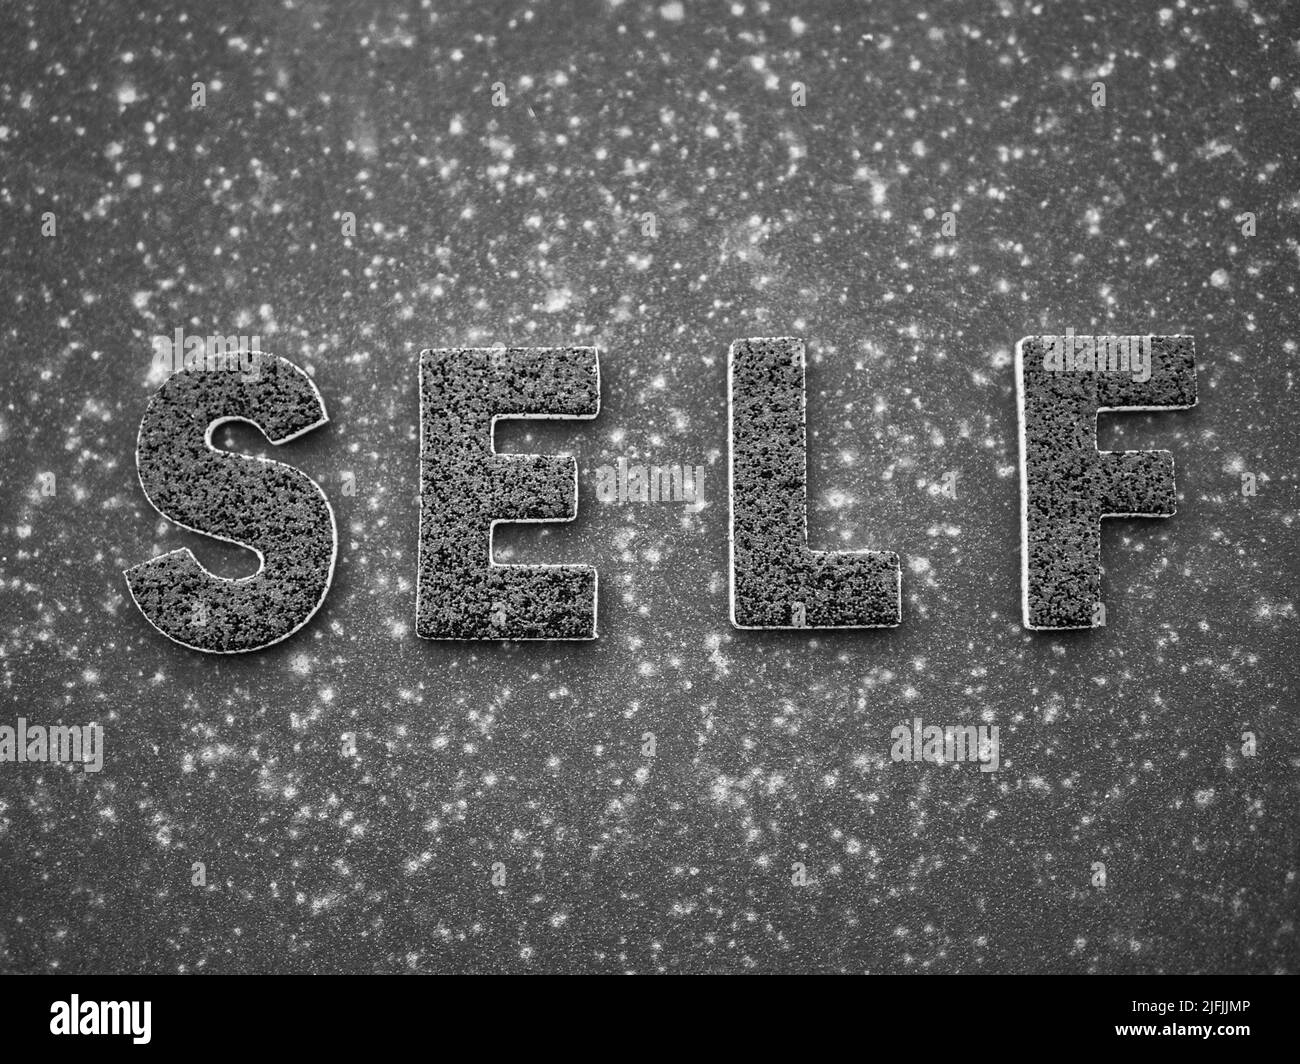 La parola 'Self' in lettere nere su una superficie metallica arrugginita nera. Foto Stock